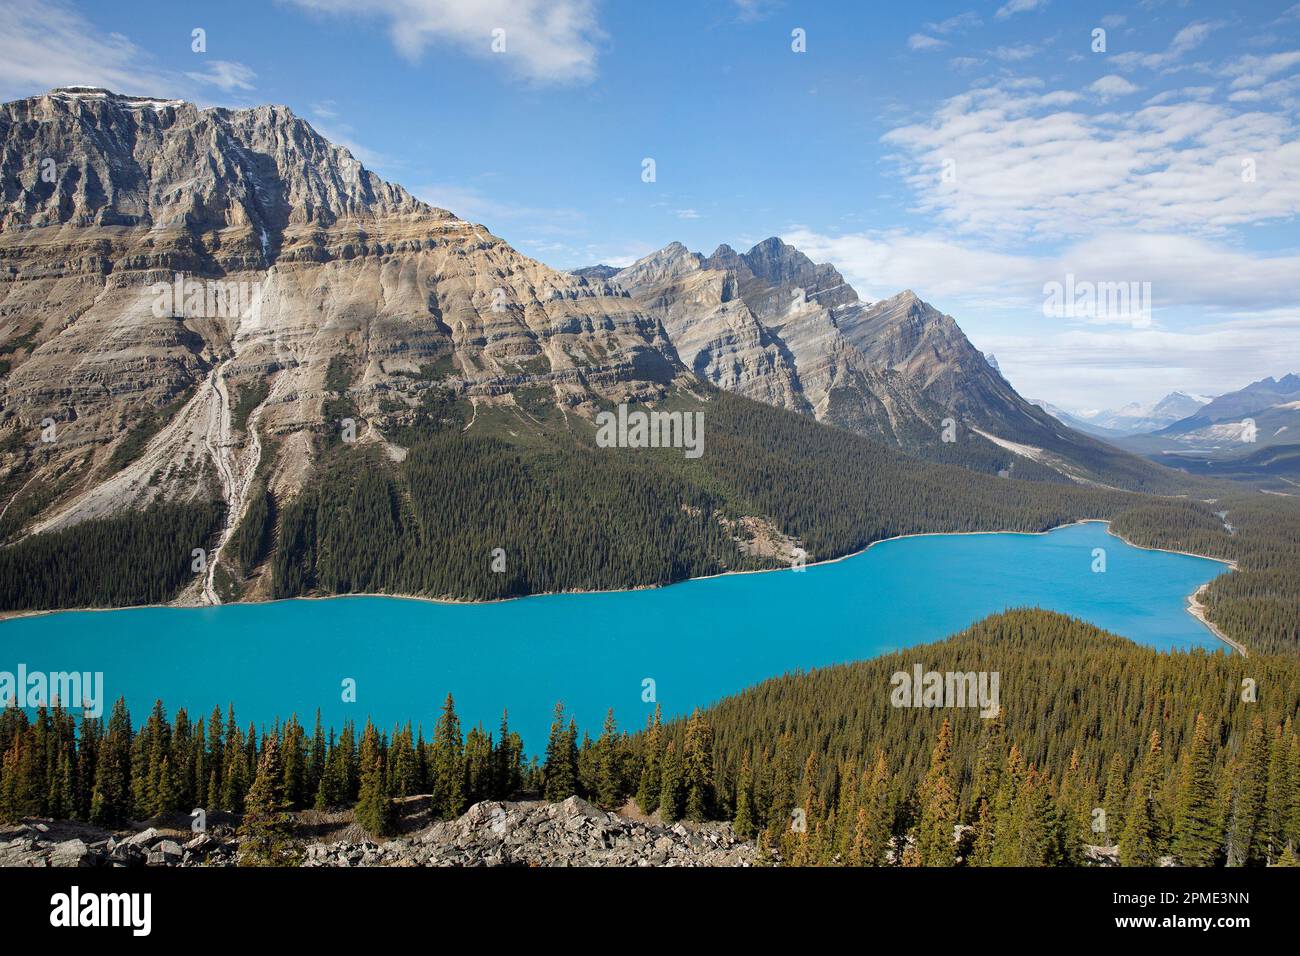 Vue sur le lac Peyto avec des eaux turquoise, une attraction pittoresque le long de la promenade Icefield dans les montagnes Rocheuses du parc national Banff, Canada Banque D'Images